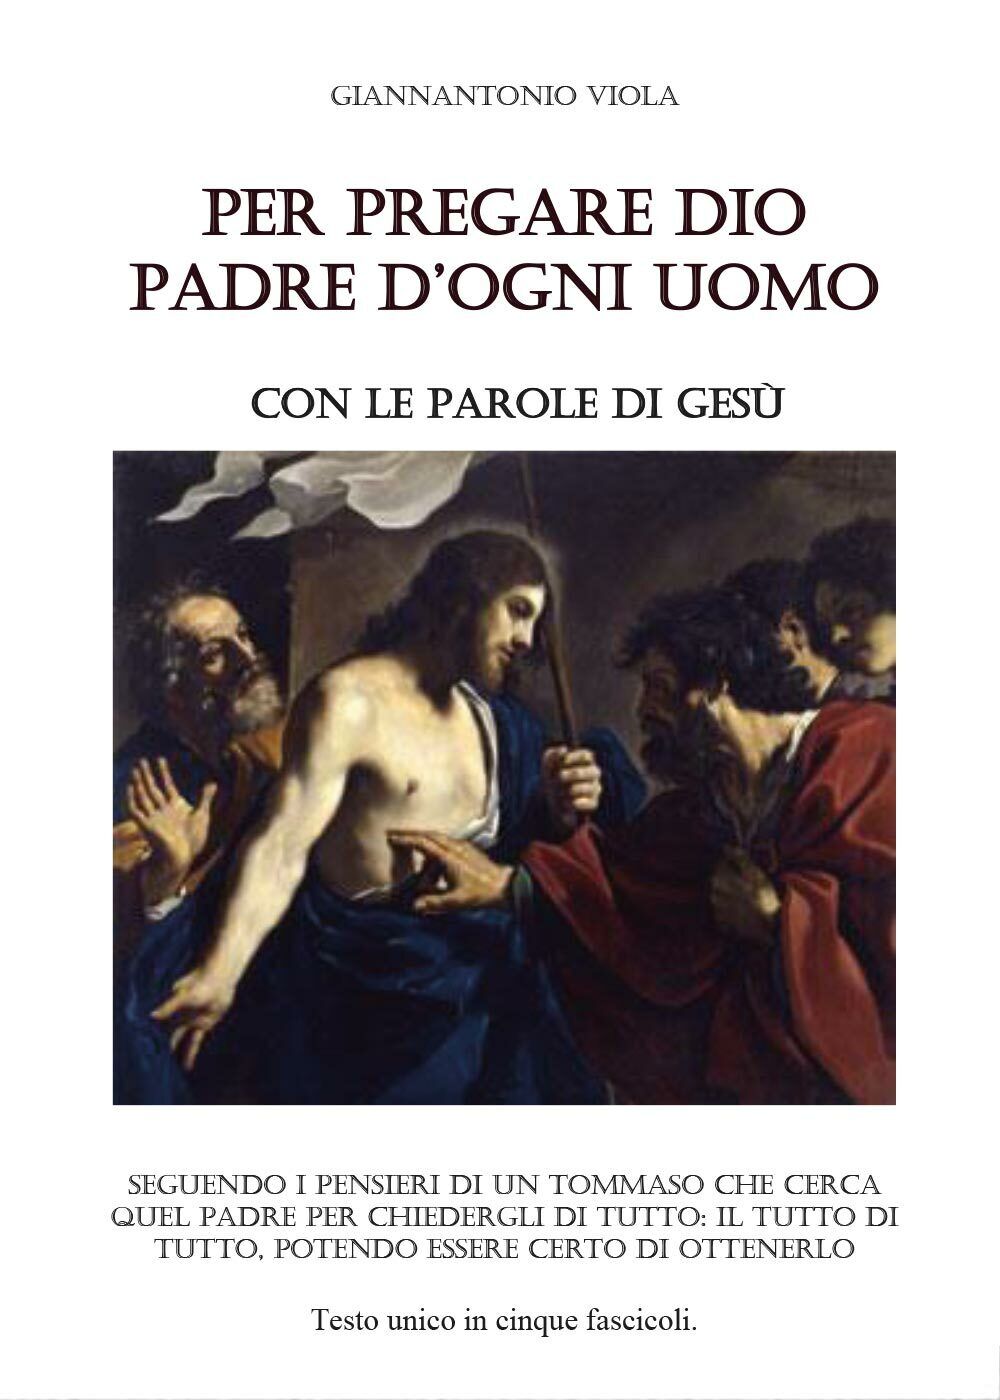 Per pregare Dio - Nuova Edizione  di Giannantonio Viola,  2017,  Youcanprint